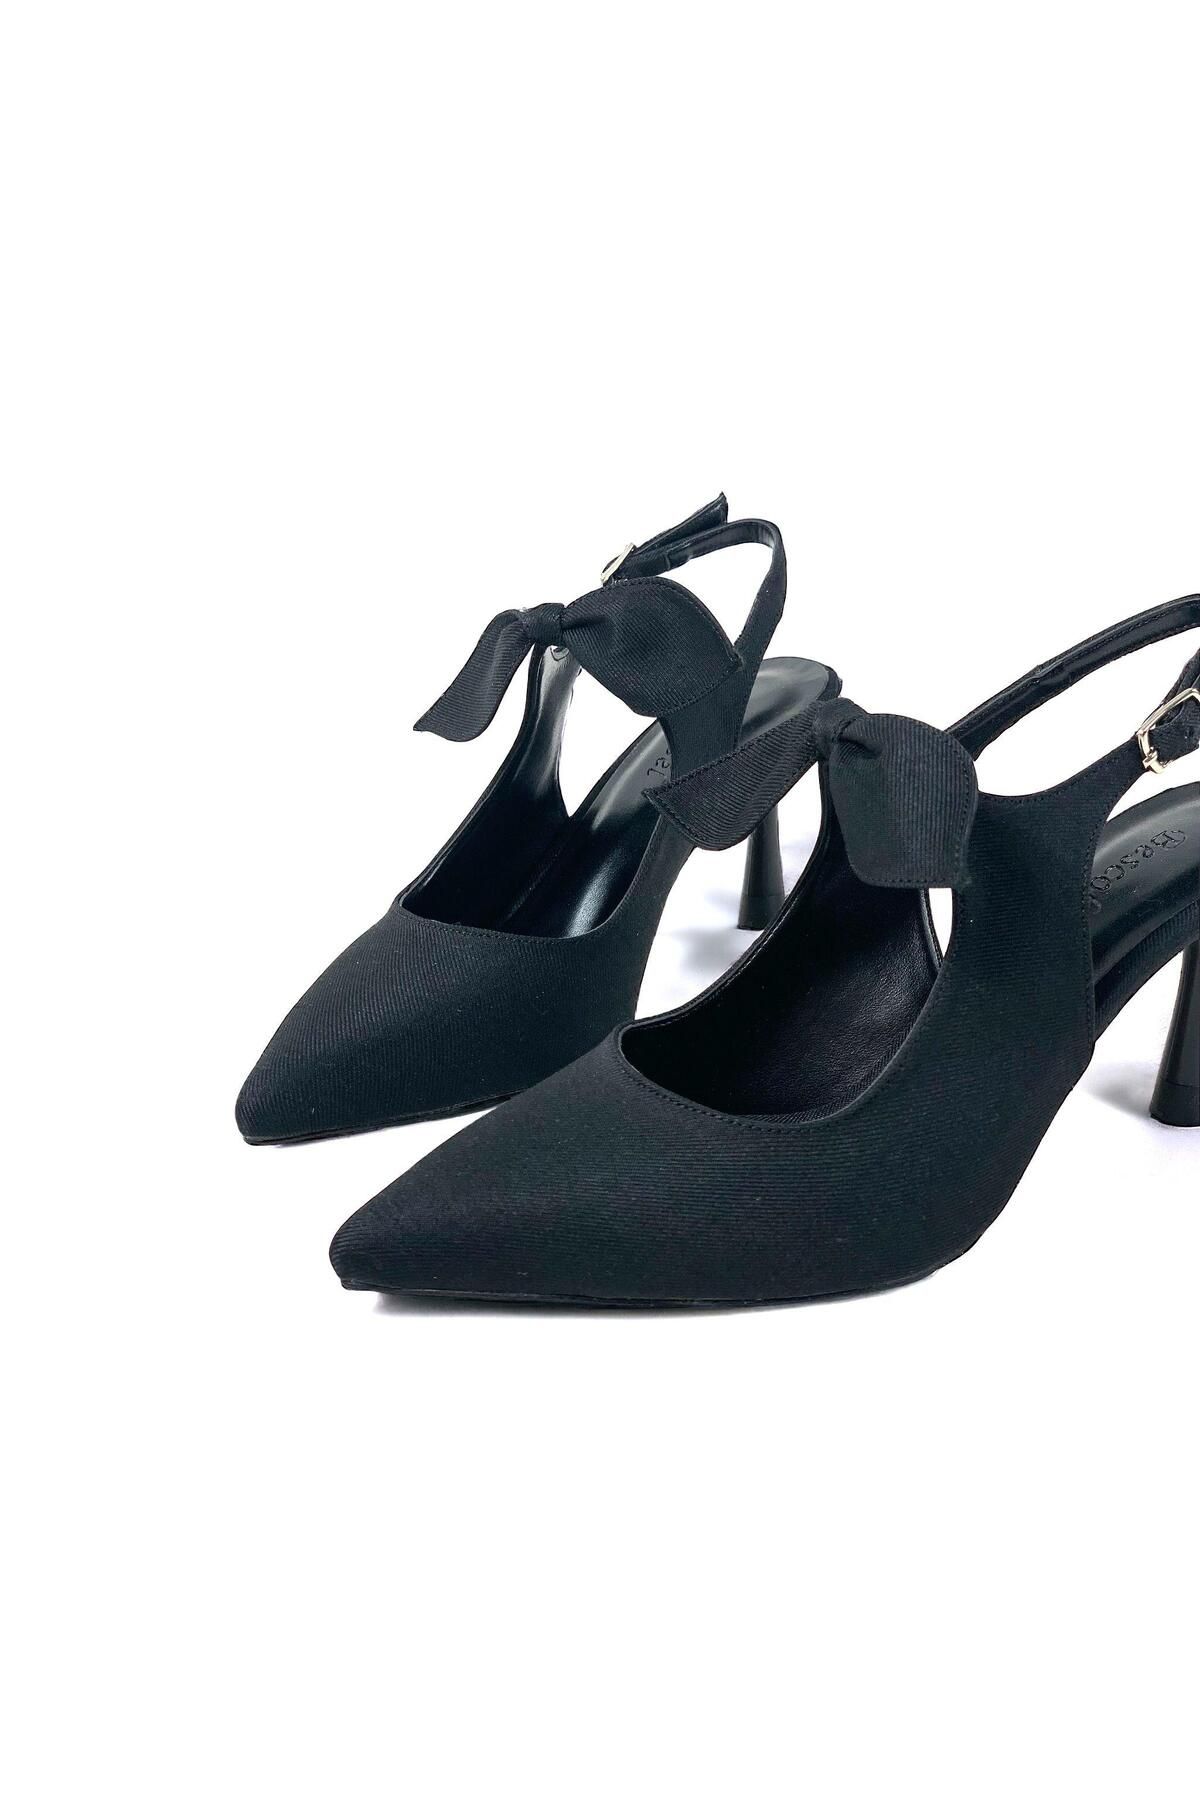 mayahobby Basskan Kadın Siyah Kot Malzeme Tanb Fiyonk Detaylı Topuklu Sivri Burun Ayakkabı 7 cm Topuk 602